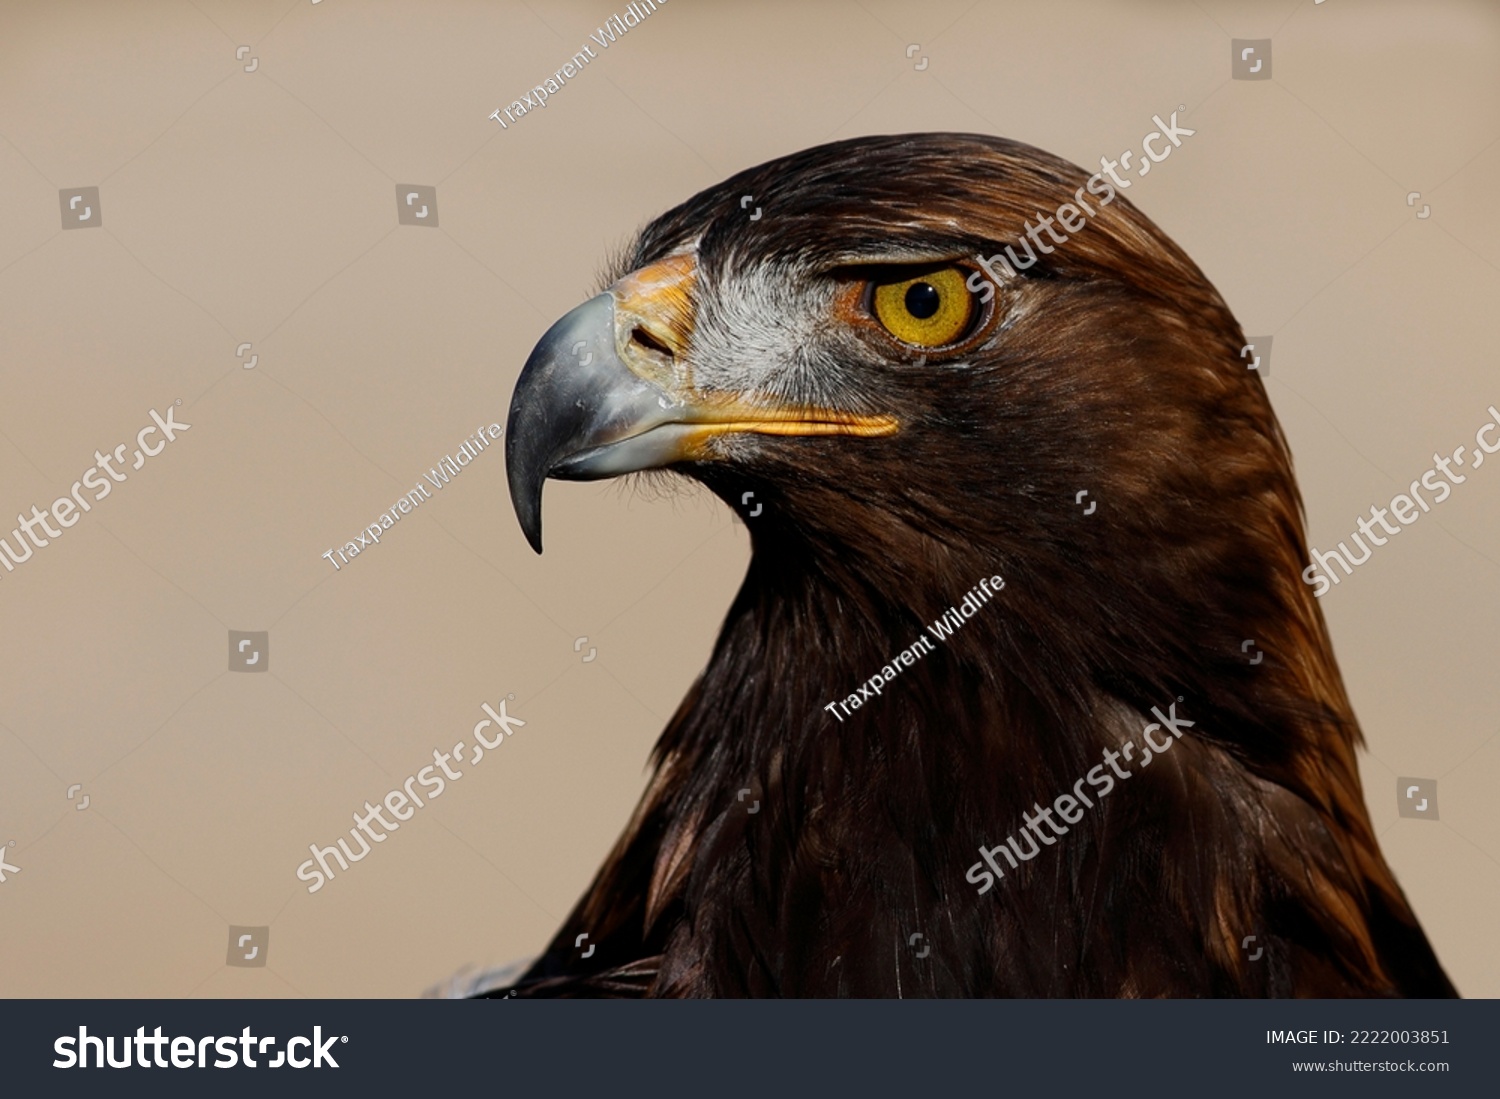 Golden eagle (Aquila chrysaetos), a majestic apex predator. #2222003851